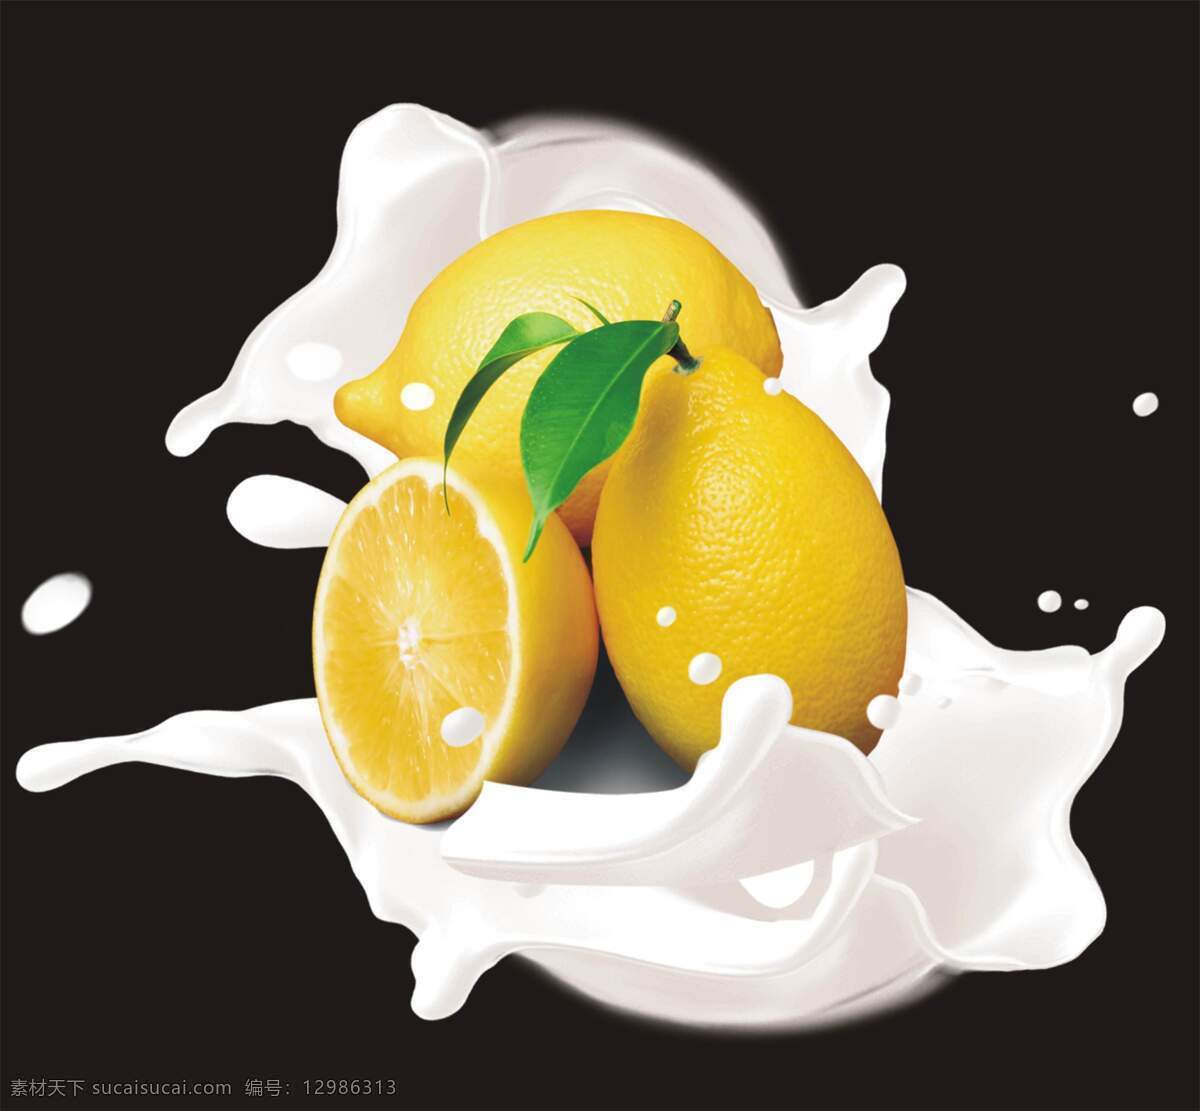 柠檬 牛奶 生物世界 水果 奶 花 鲜 设计素材 模板下载 奶花鲜柠檬 psd源文件 文件 源文件